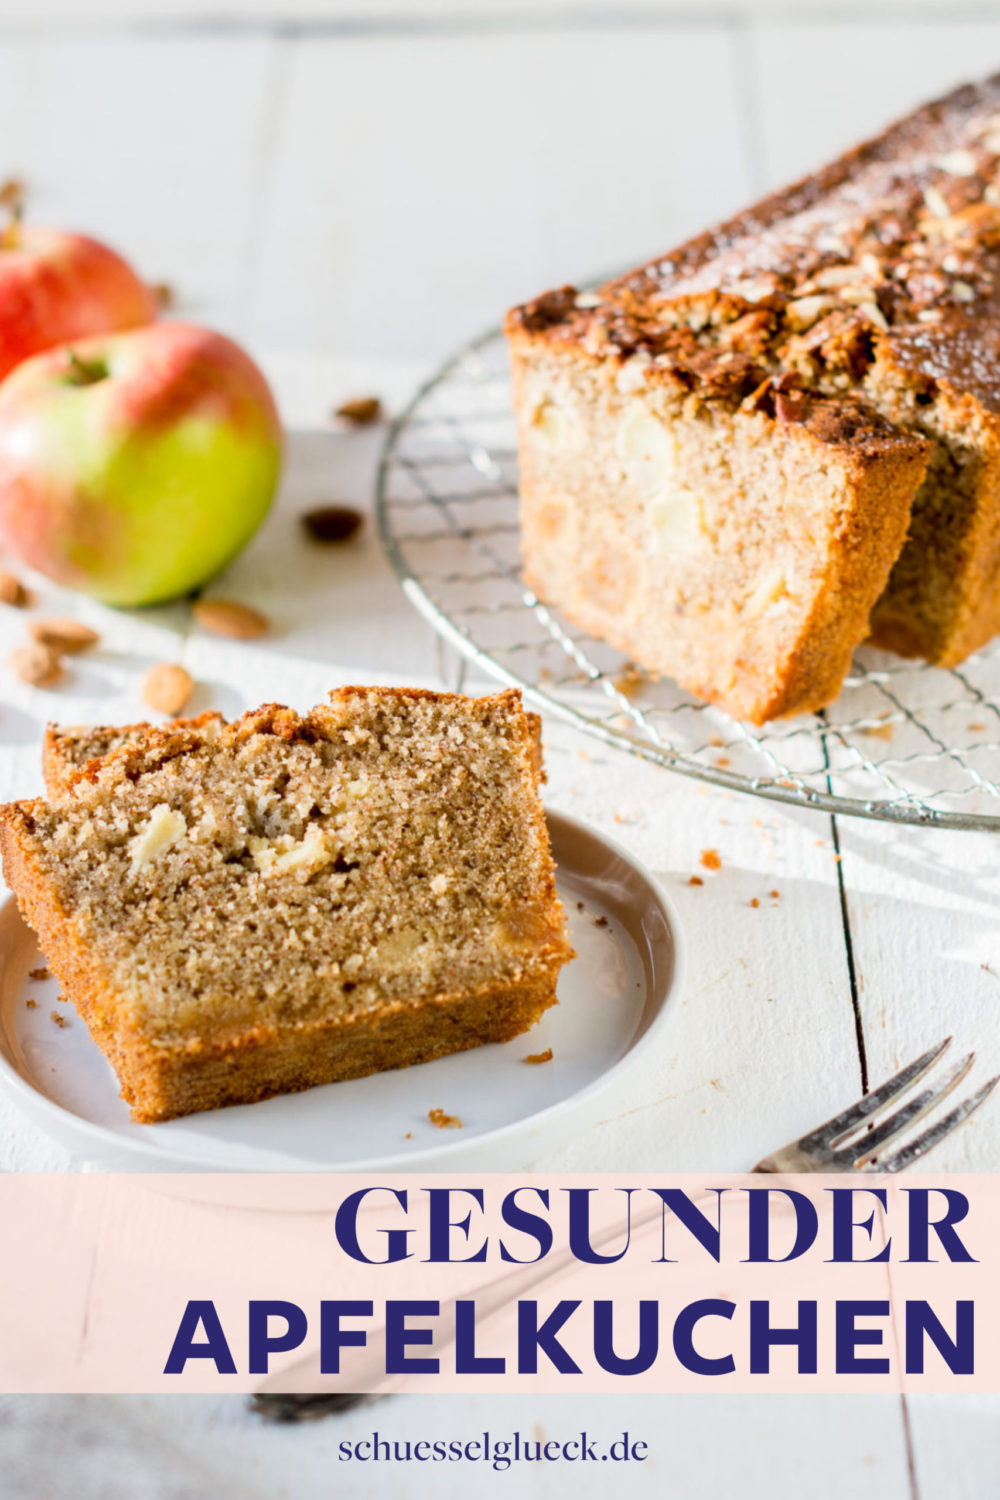 Saftiger, glutenfreier Apfelkuchen mit Mandeln & Marzipan – blitzschneller Kastenkuchen für Gäste!